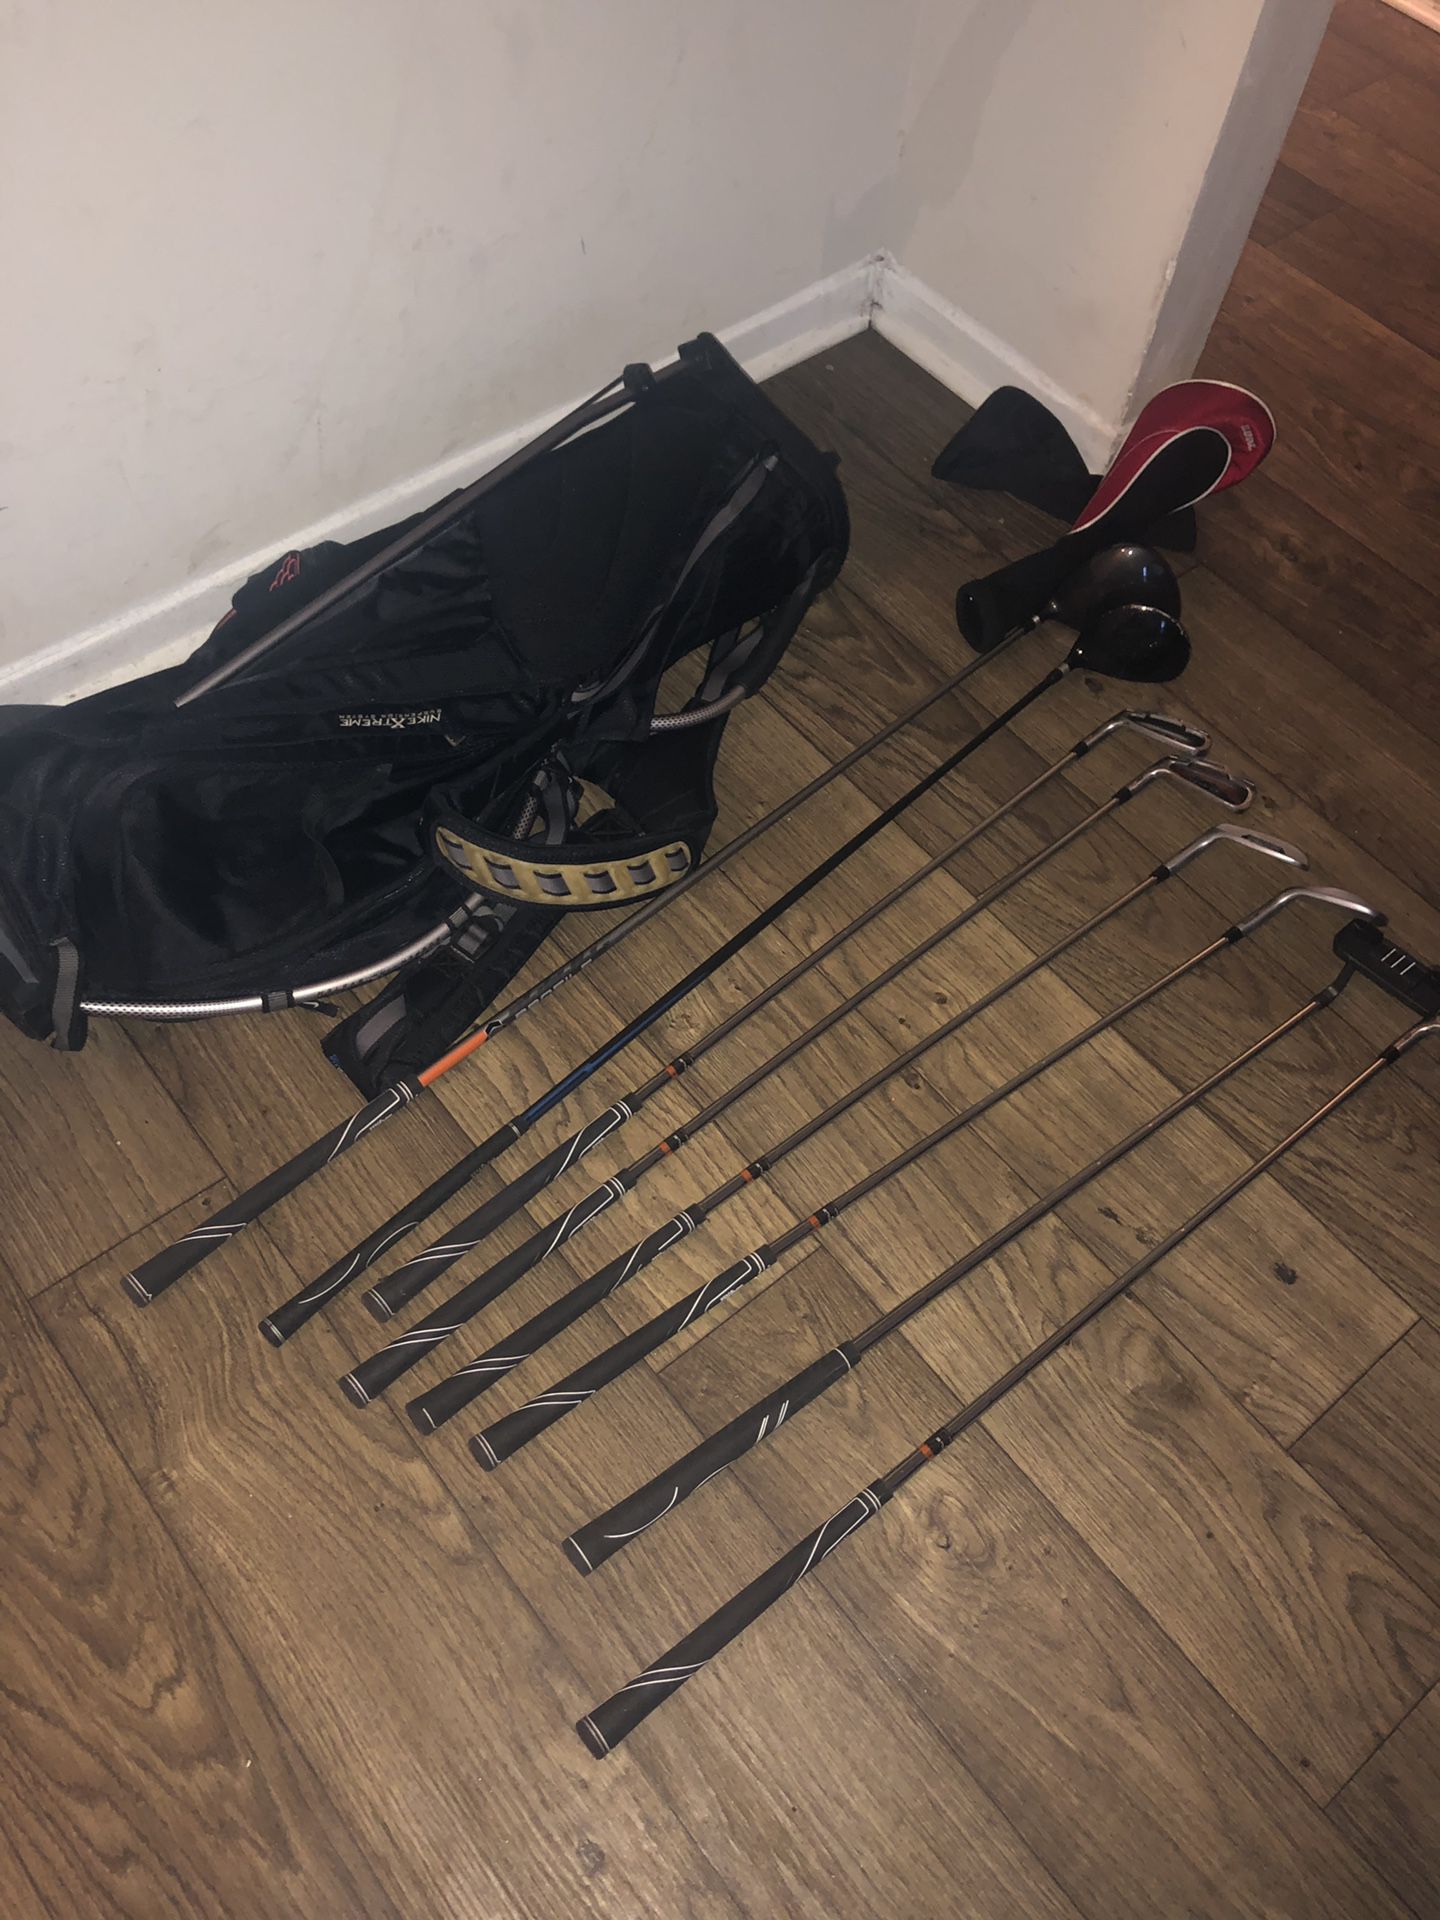 Set of Wilson golf clubs